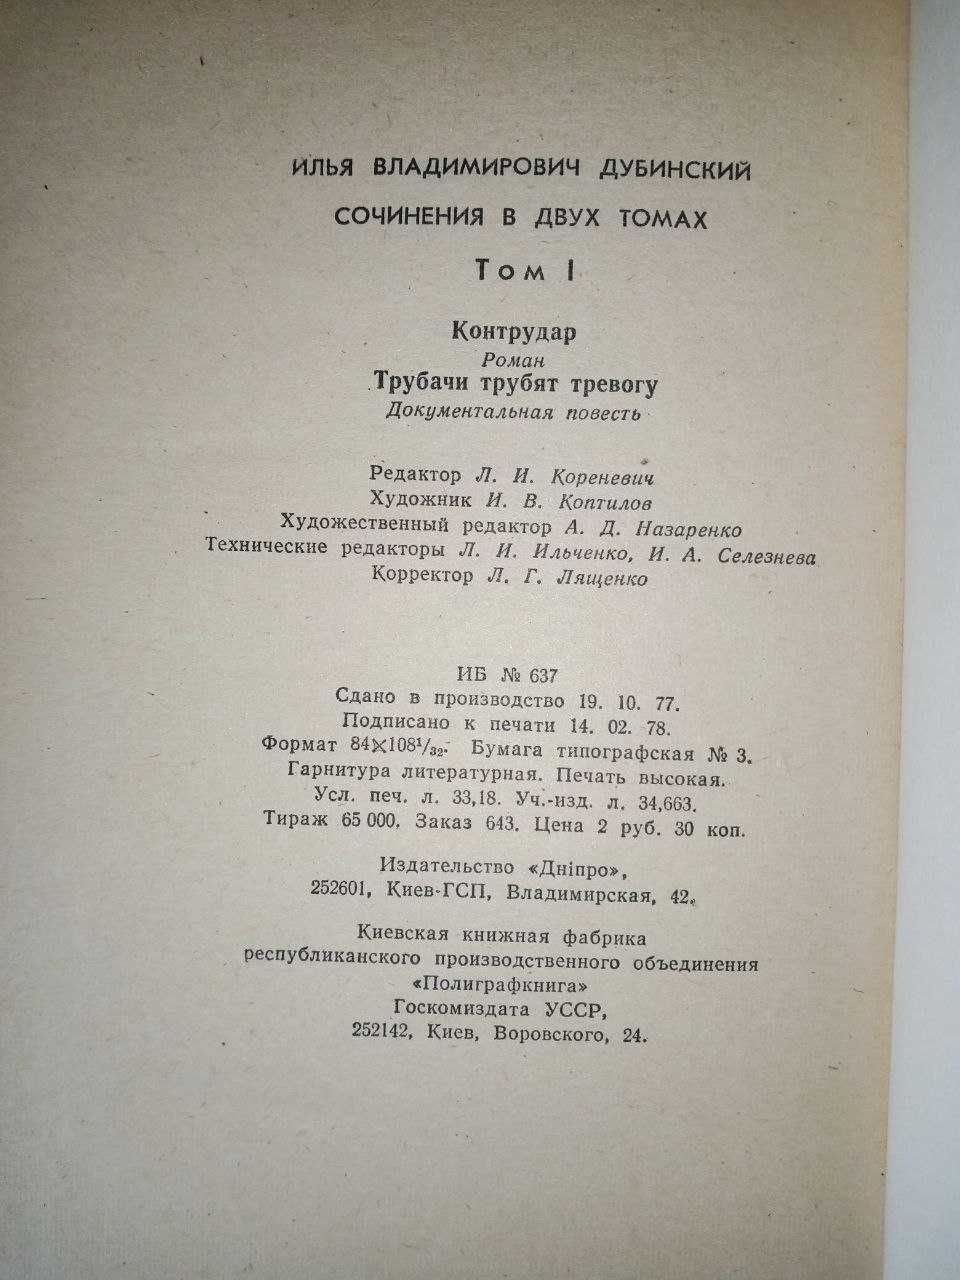 Илья Дубинский Сочинения в 2 томах